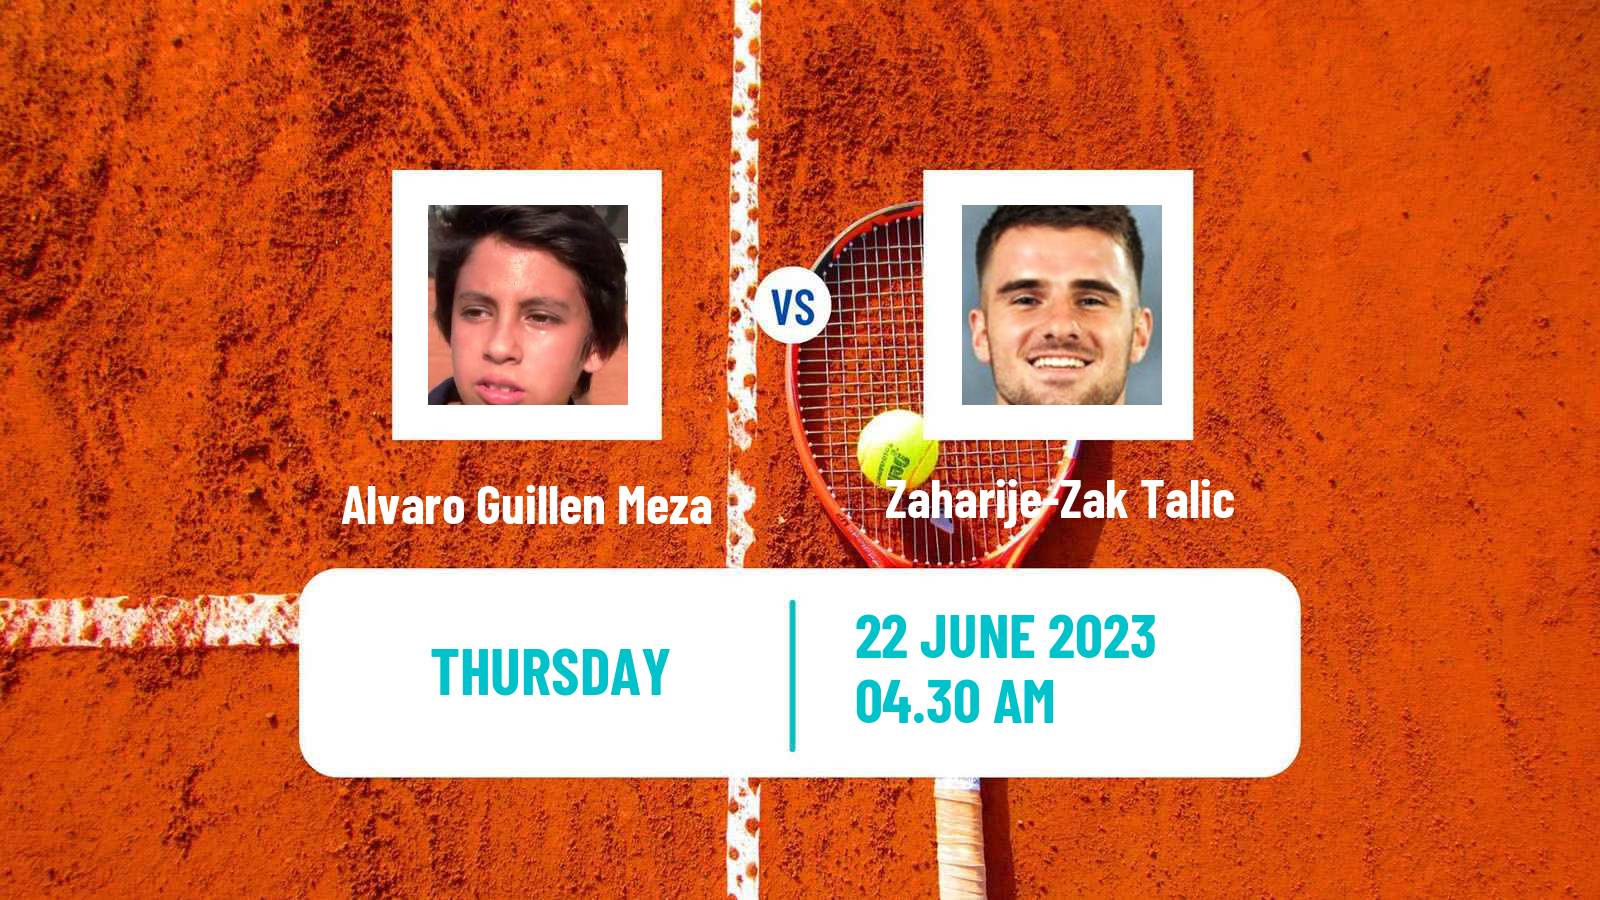 Tennis ITF M15 Store Men Alvaro Guillen Meza - Zaharije-Zak Talic